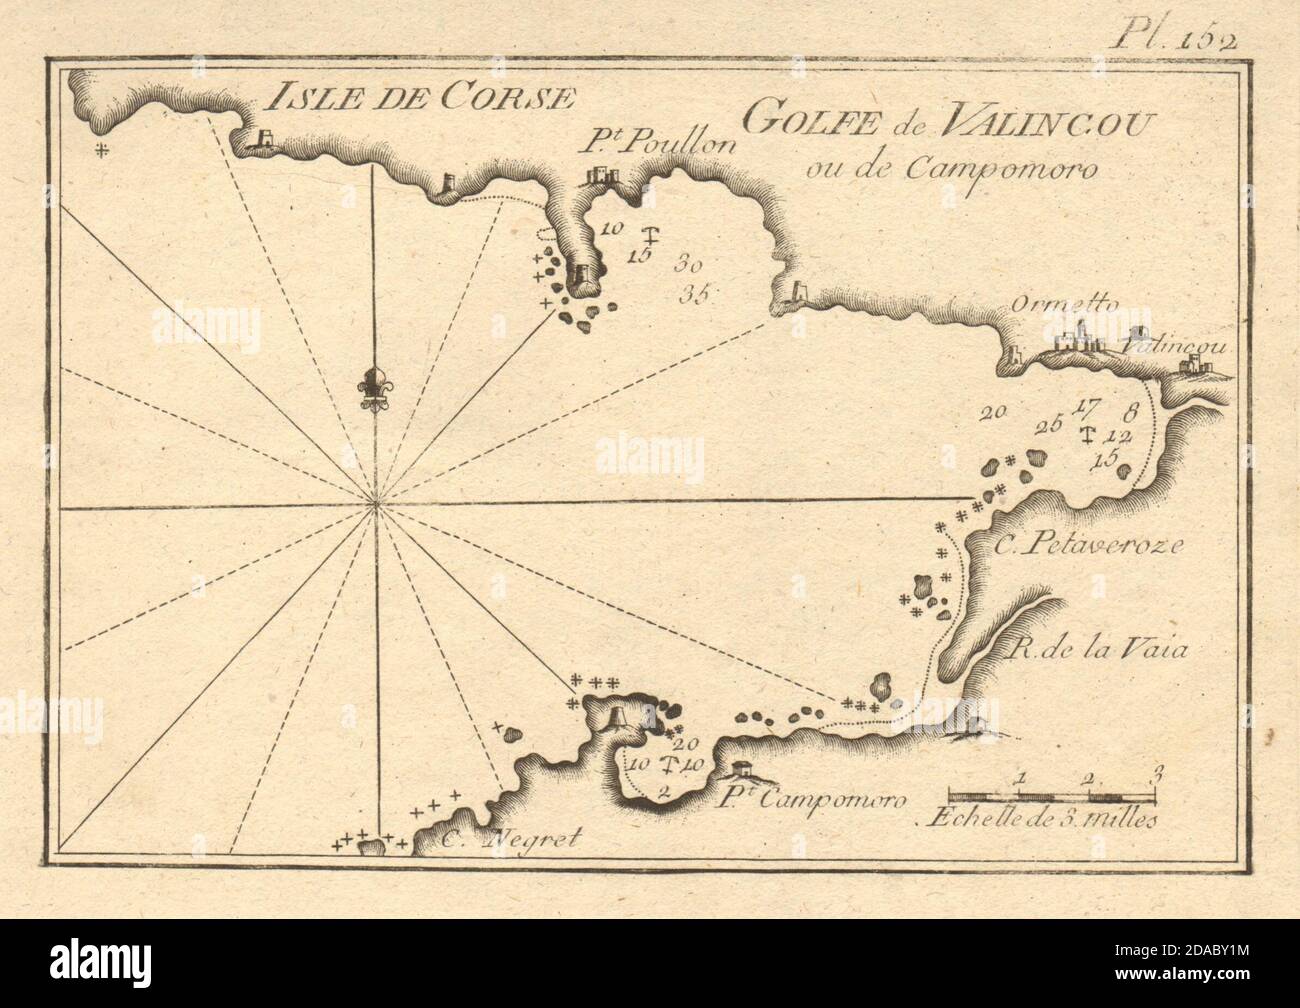 Isle de Corse. Golfe de Valincou. Valinco Gulf, Corsica. Propriano ROUX 1804 map Stock Photo